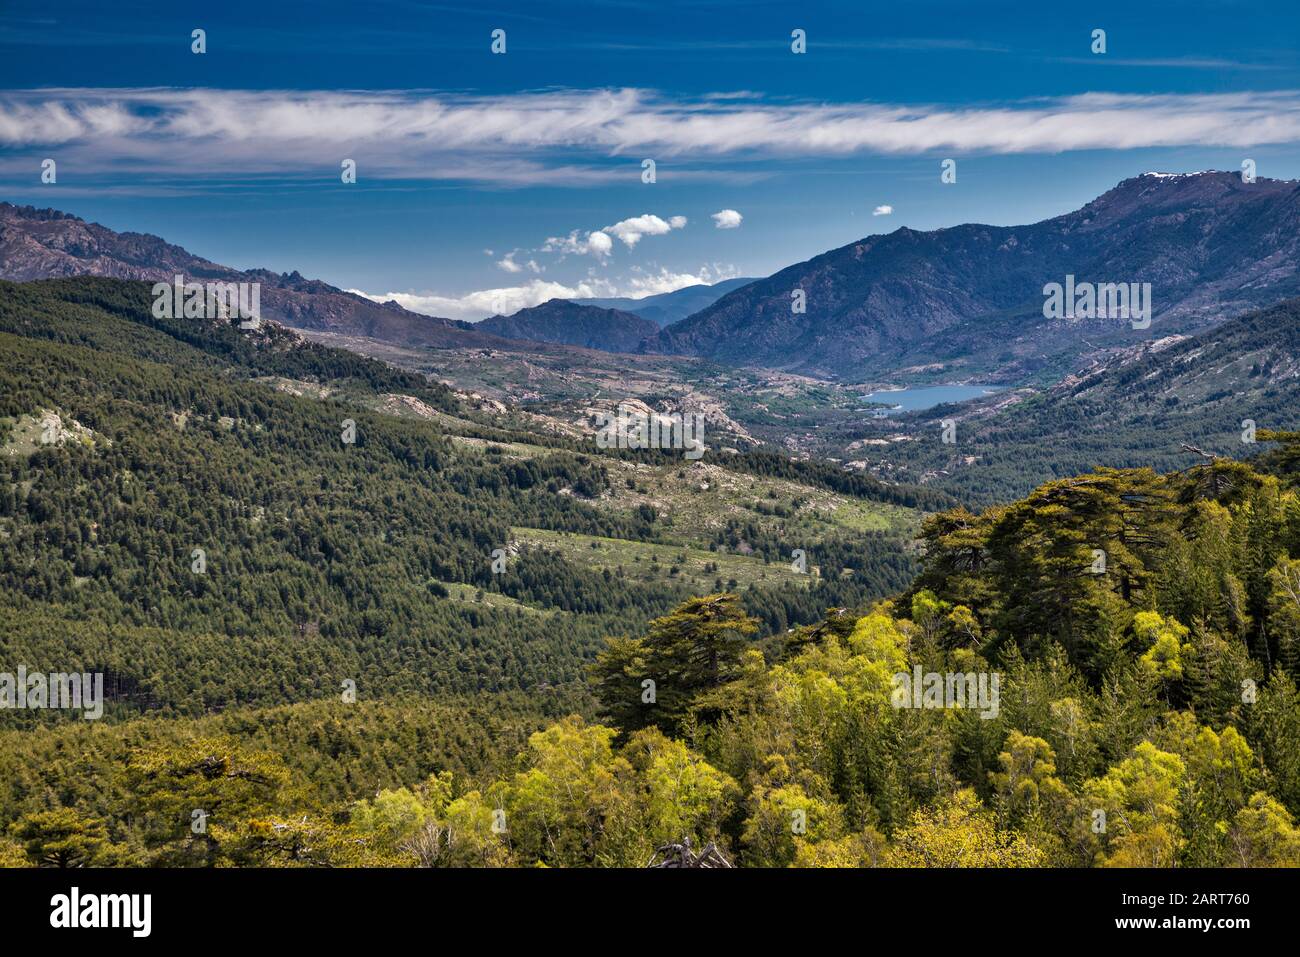 Vallée de la rivière Golo, lac Calacuccia, vue du Col de Vergio, passage de montagne sur la route D-84, département de Haute-Corse, Corse, France Banque D'Images